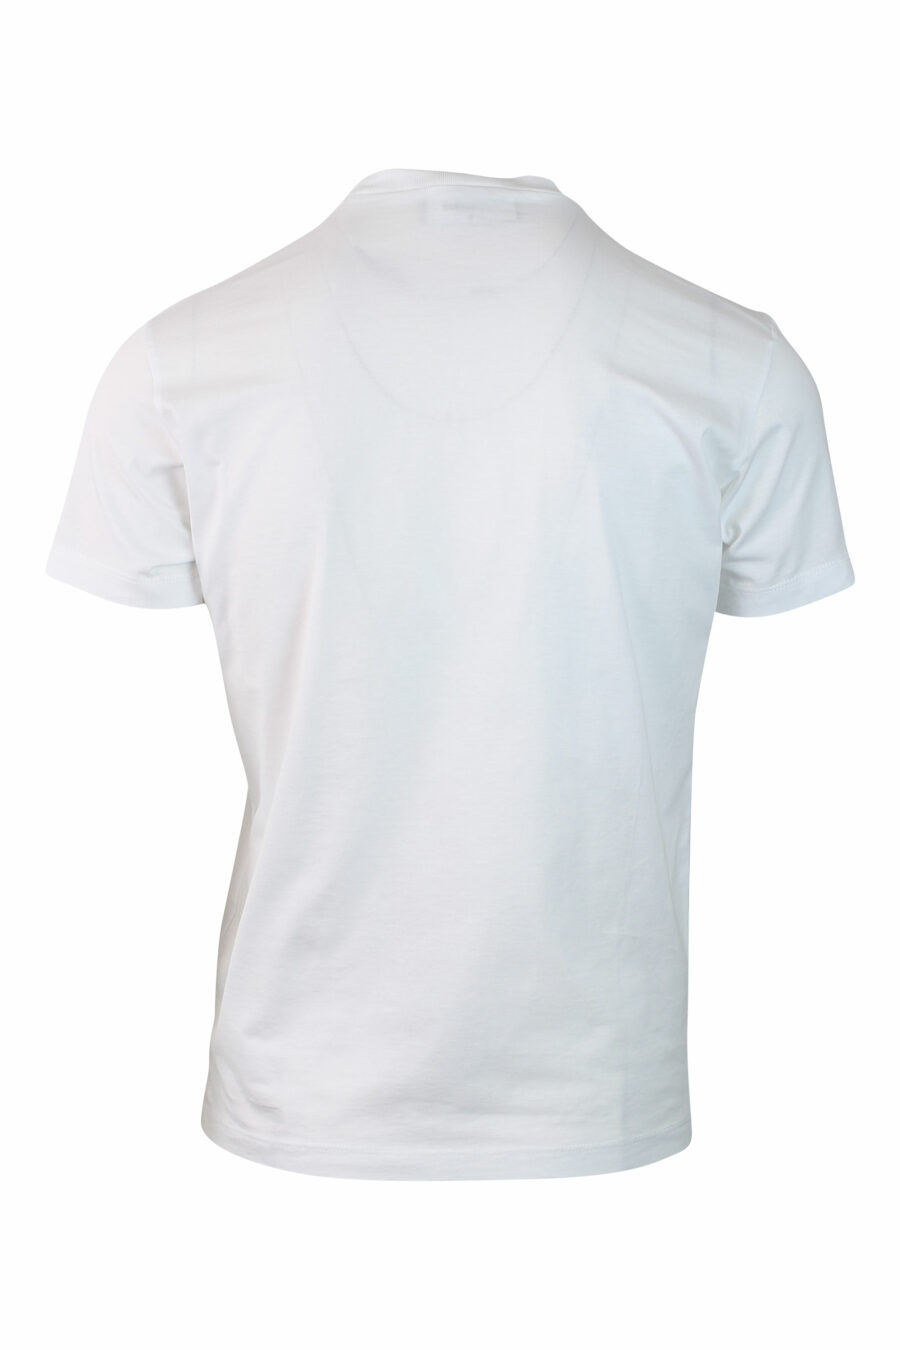 Camiseta blanca con minilogo - IMG 0134